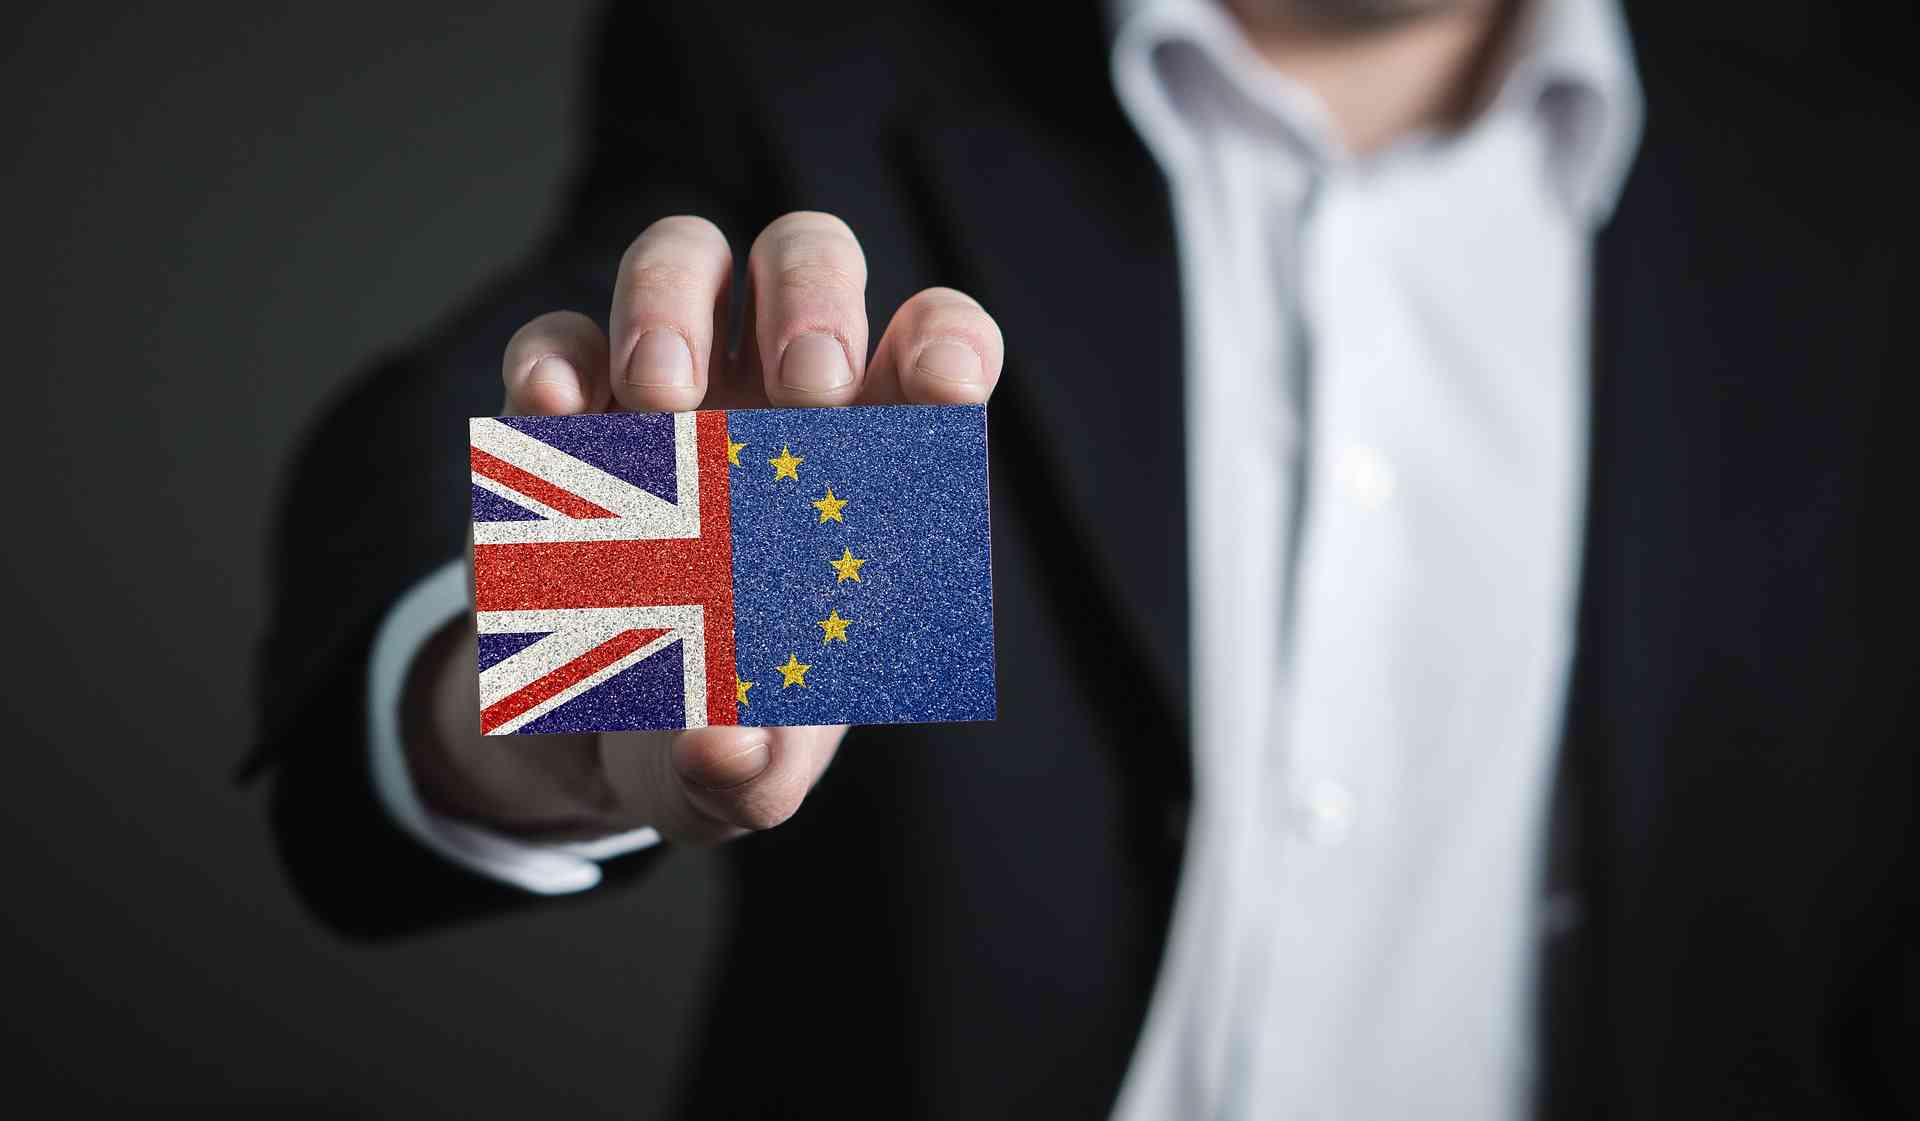 Datenschutz und Brexit. Ein Mann im Anzug hält einen Gegenstand nach vorne auf dem die UK- und EU-Flaggen abgebildet sind.